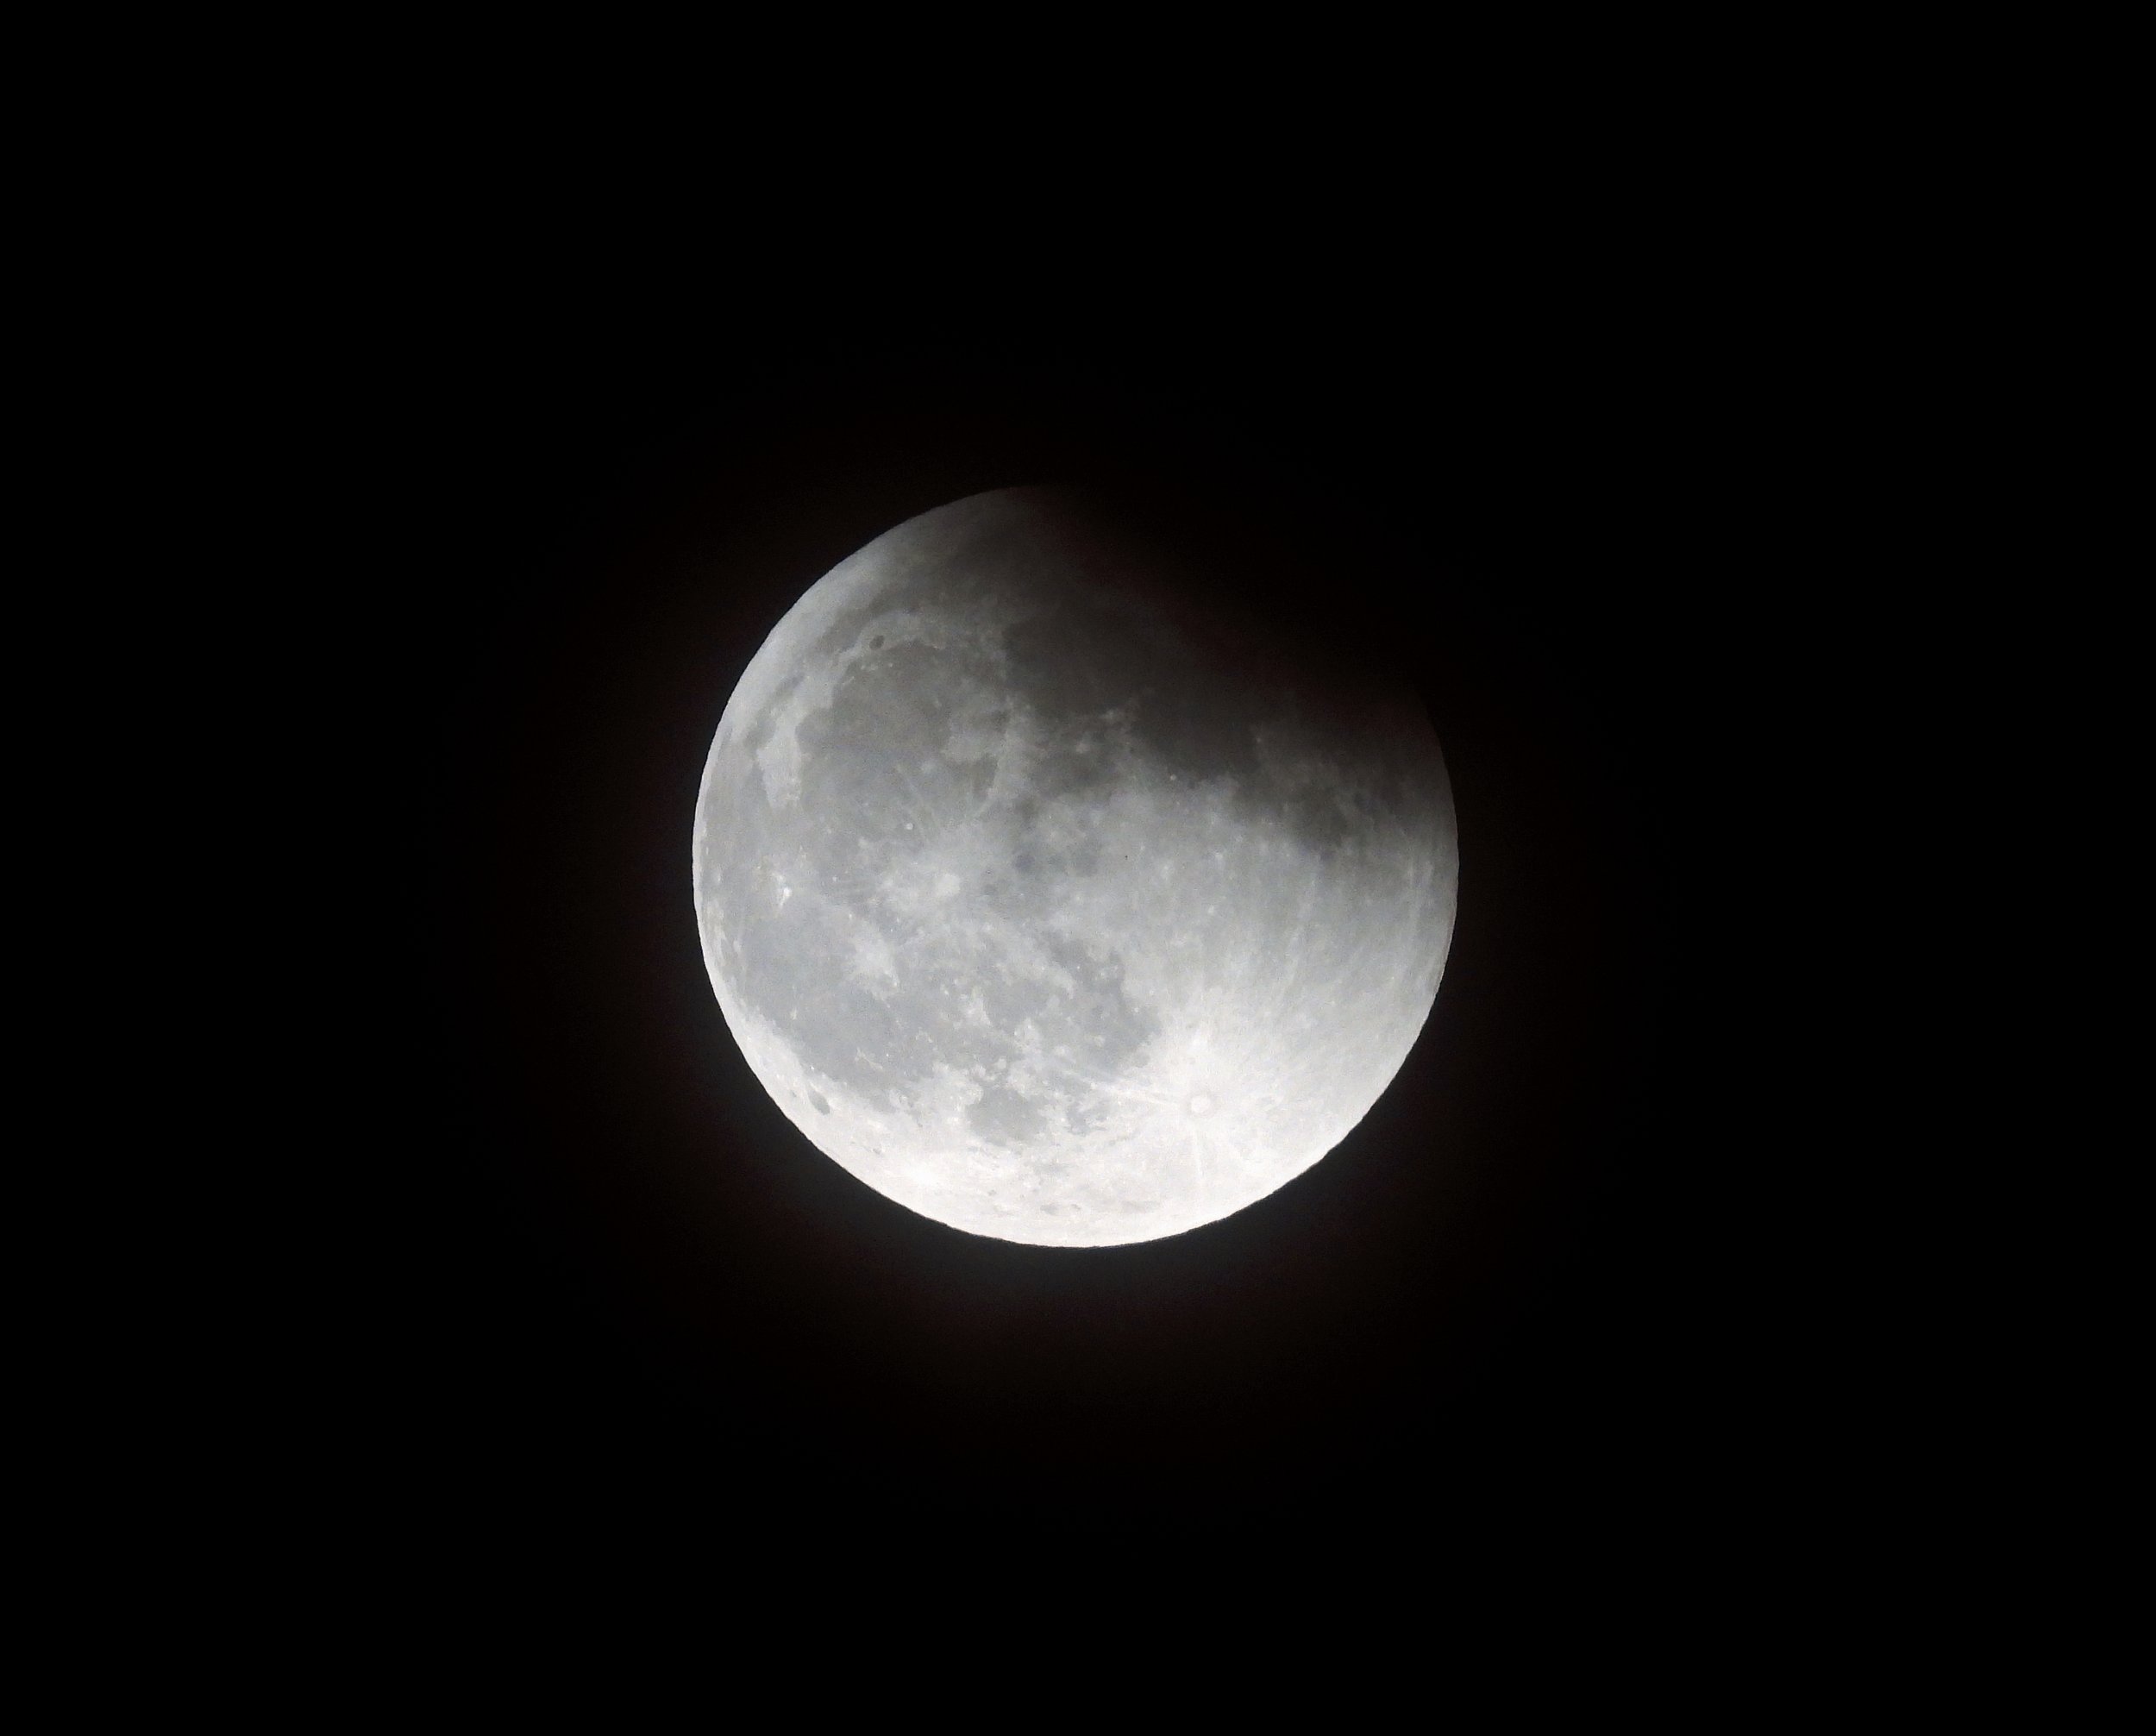 The beginning of a lunar eclipse